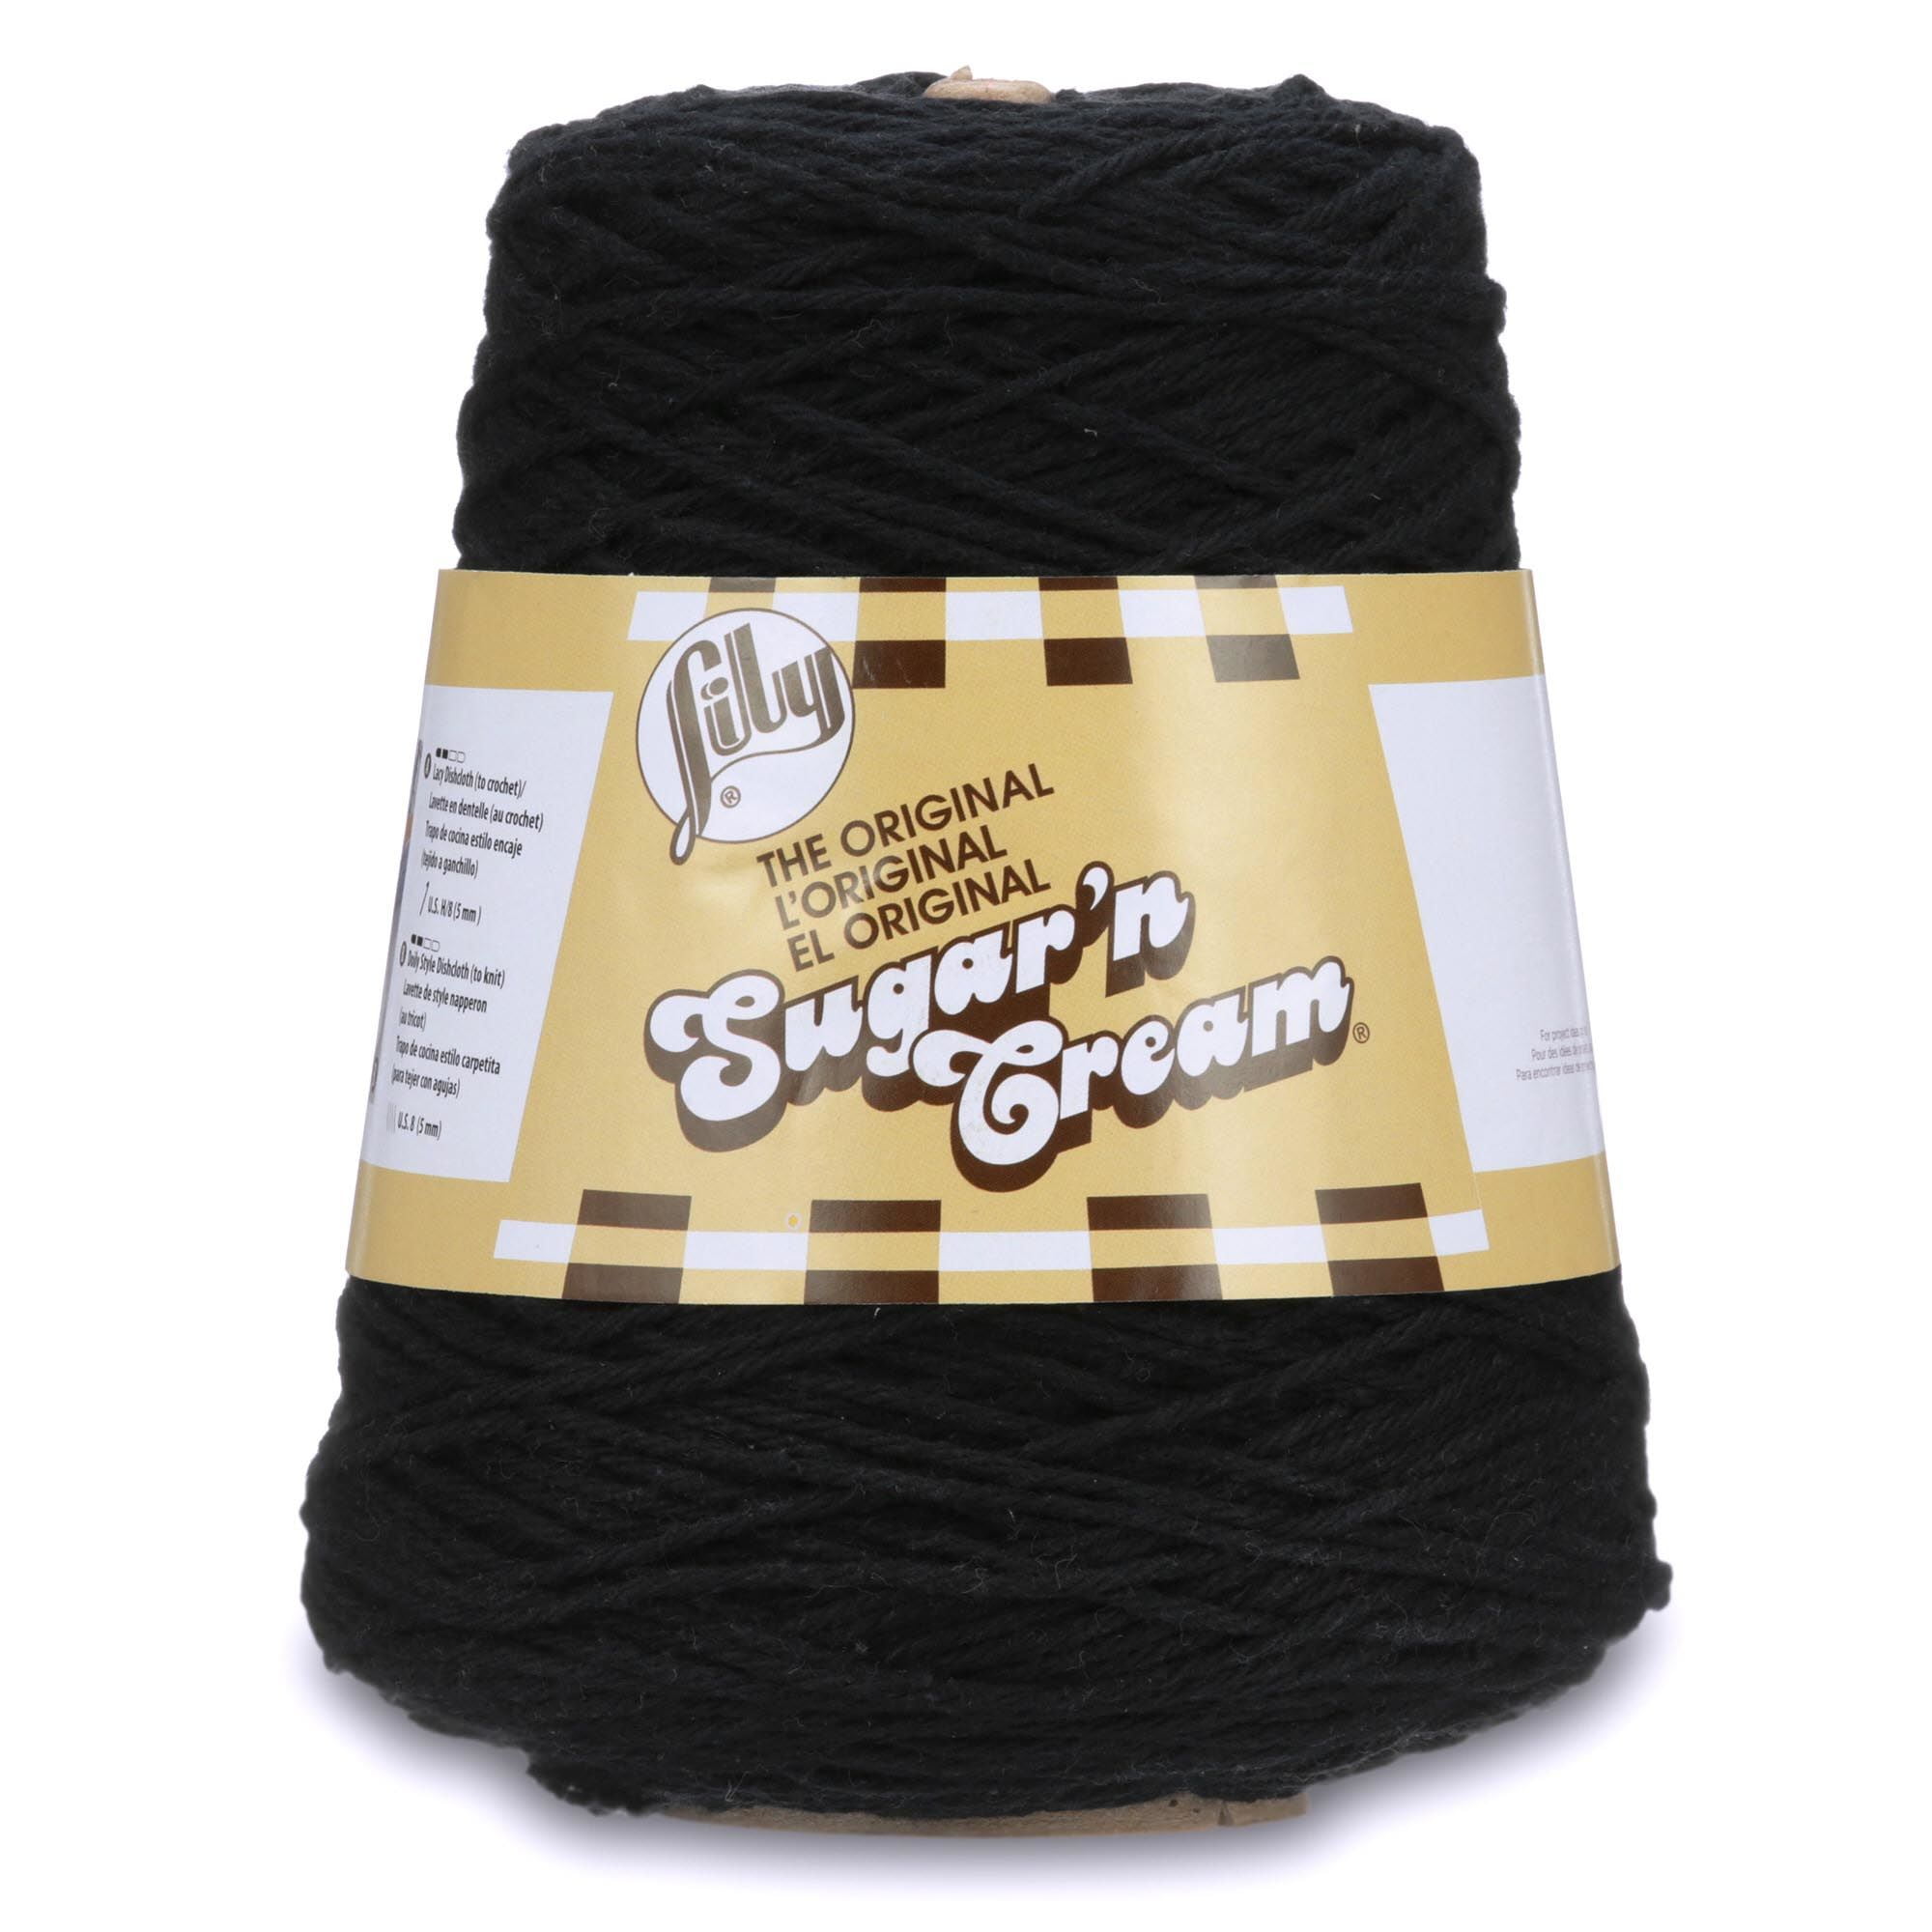 Buy Lily Sugarn Cream Medium 100 Cotton Black Yarn, 706 yd Online in